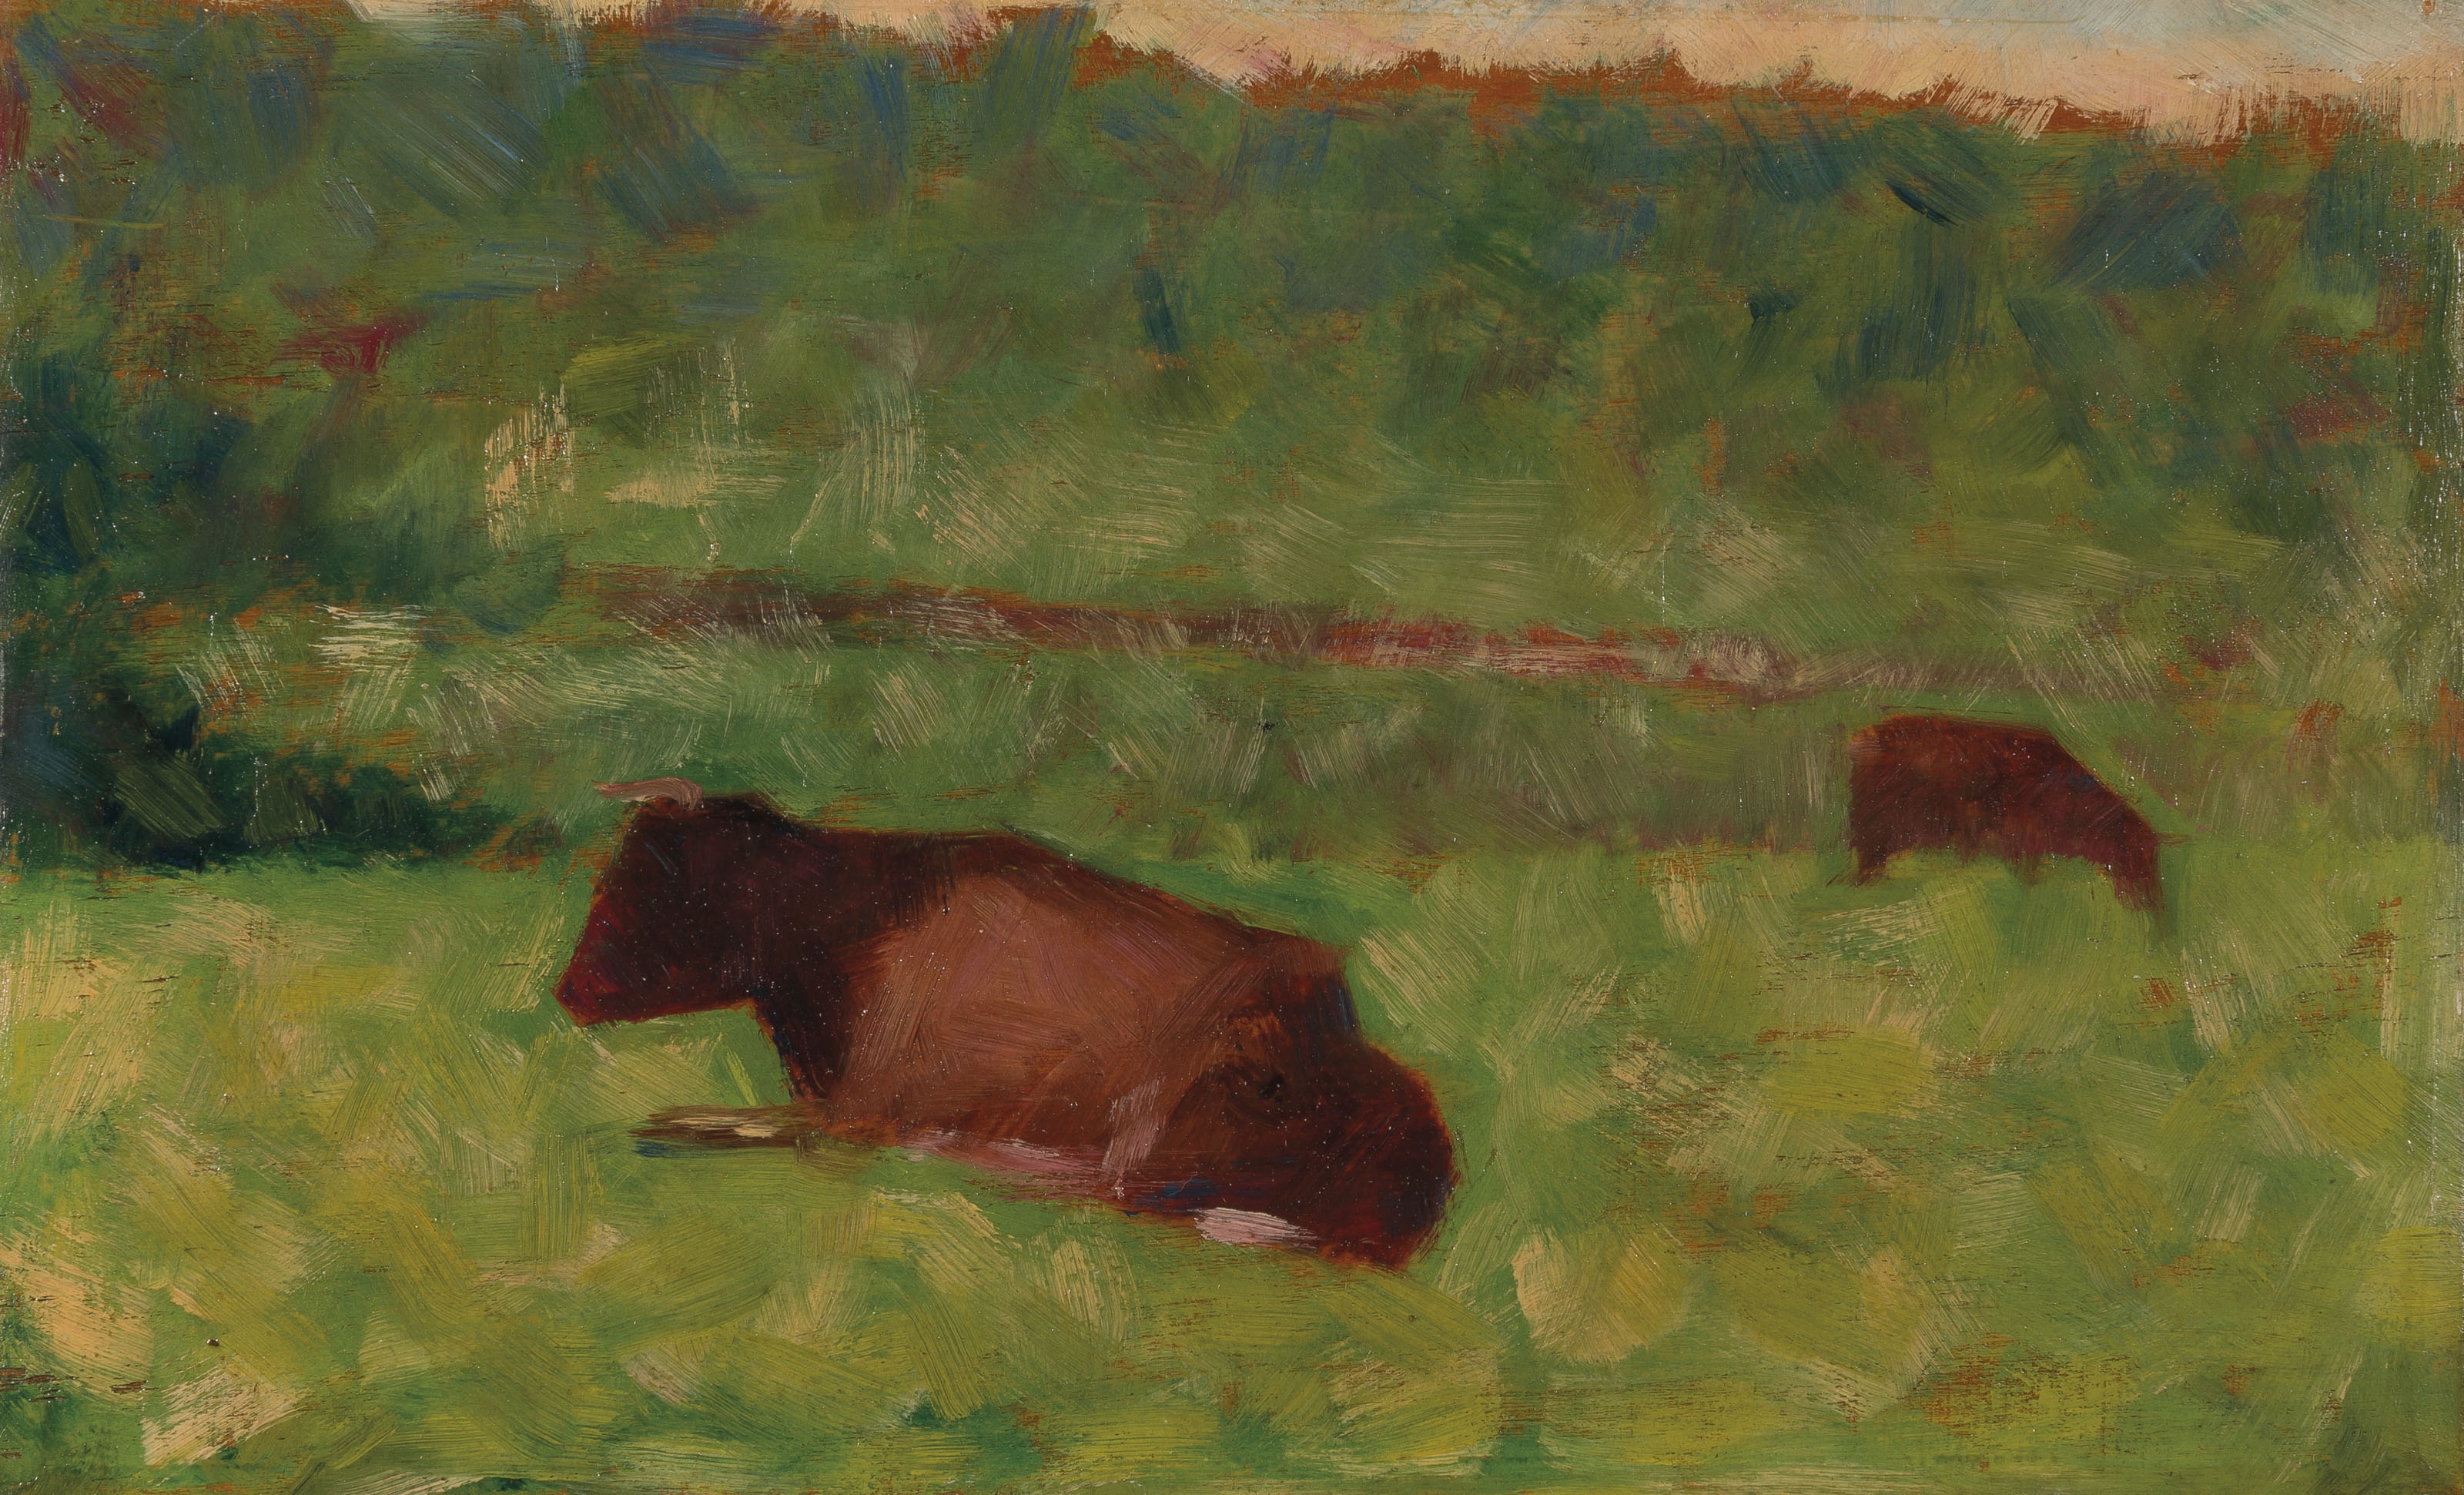 Vaches dans un pré by Georges Seurat, Painted circa 1883